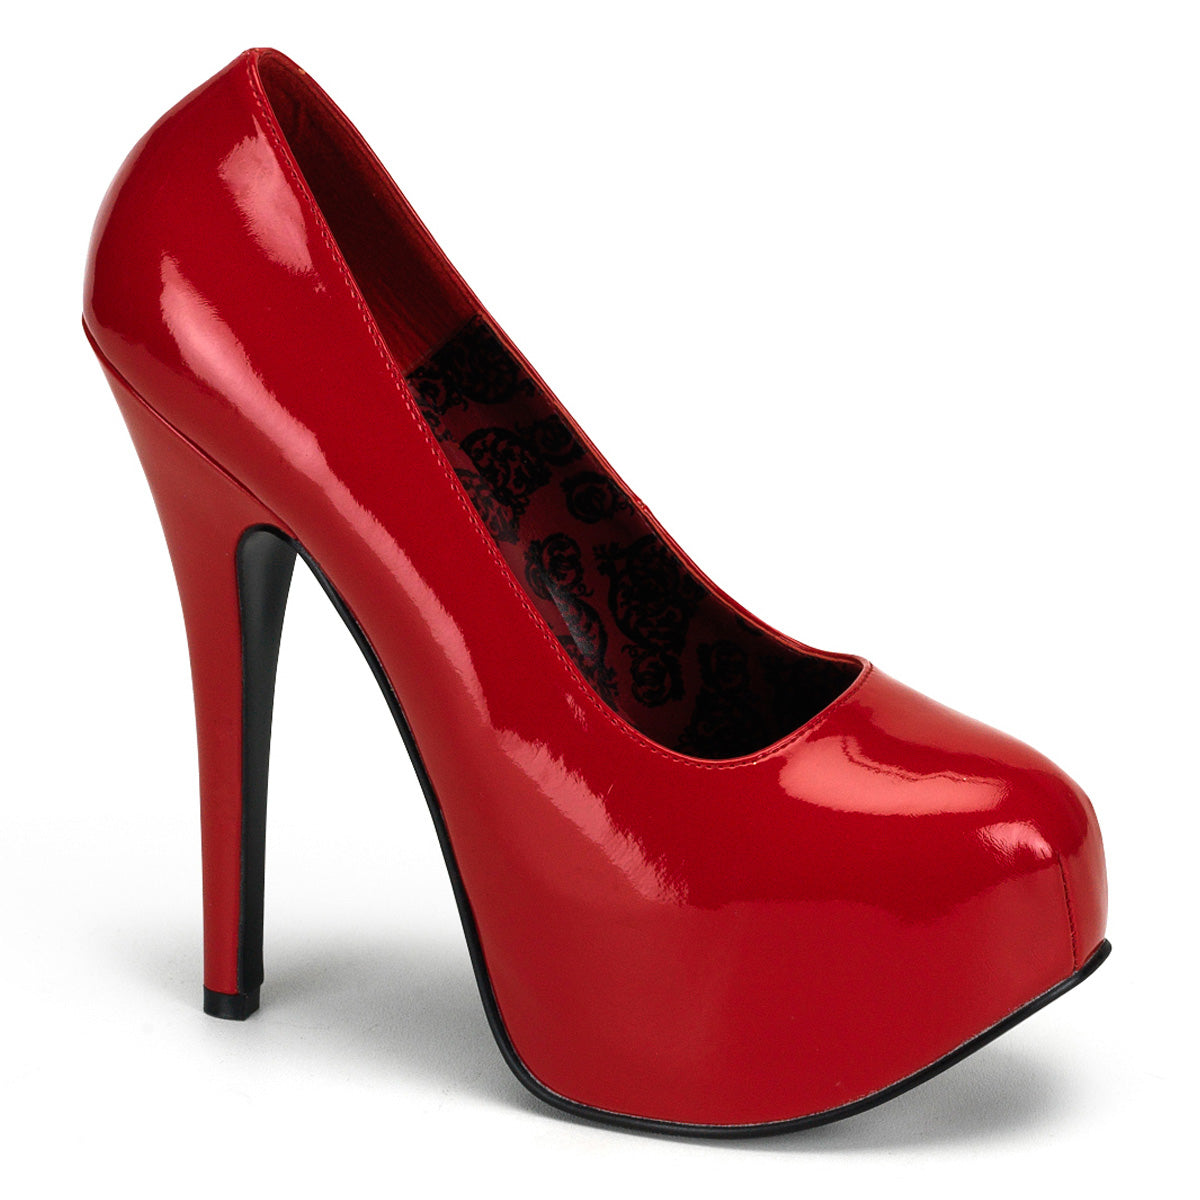 TEEZE-06 Bordello Hidden Platform High Heel Red Sexy Shoes